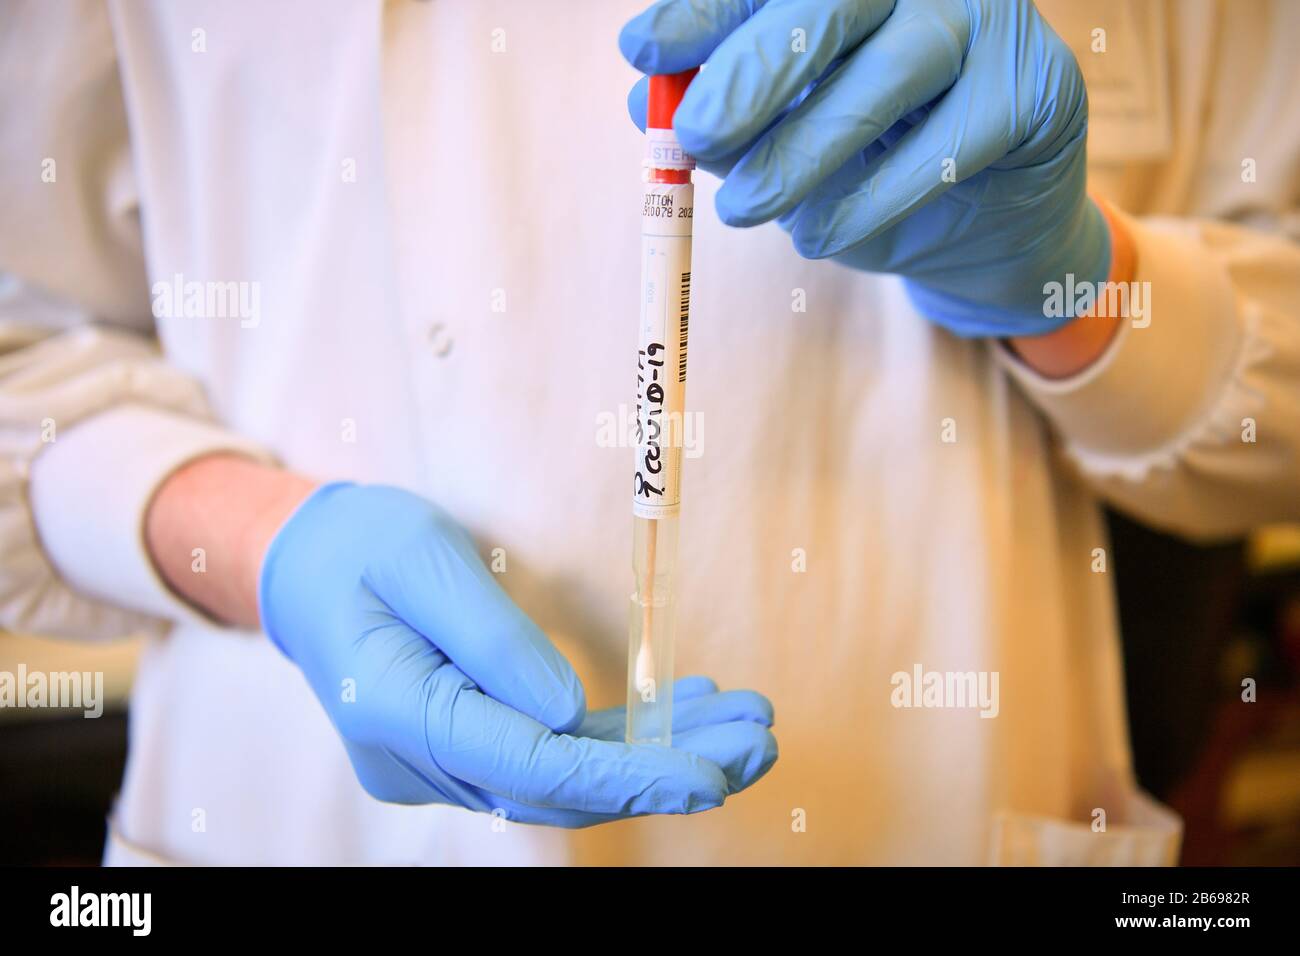 Un tampone COVID-19 fittizio viene maneggiato all'interno di una provetta sterile sigillata durante una dimostrazione eseguita da tecnici di laboratorio che eseguono test diagnostici per il coronavirus nel laboratorio di microbiologia all'interno del Centro di Virologia Specialist presso l'ospedale universitario del Galles di Cardiff. Foto Stock